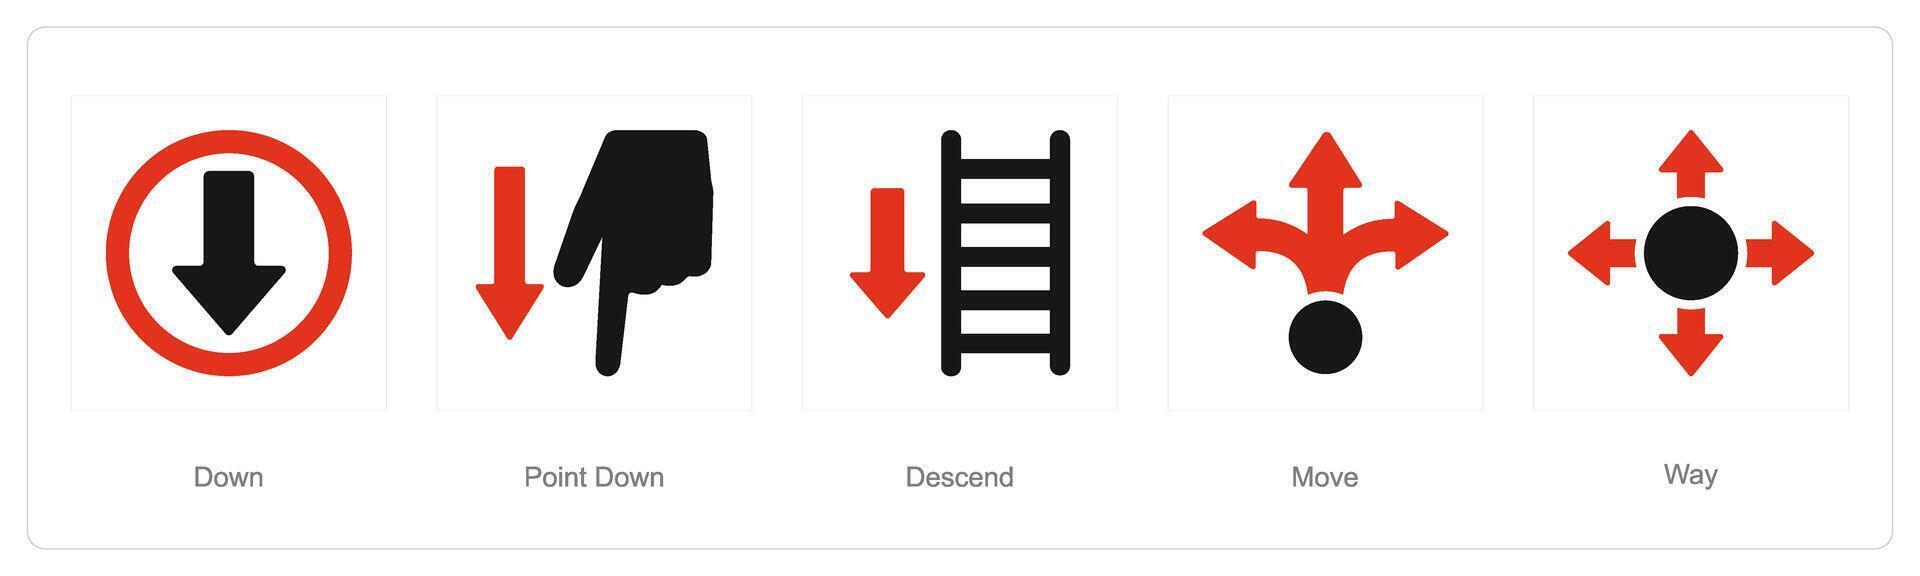 un' impostato di 5 direzione icone come fuori uso, punto fuori uso, scendere vettore